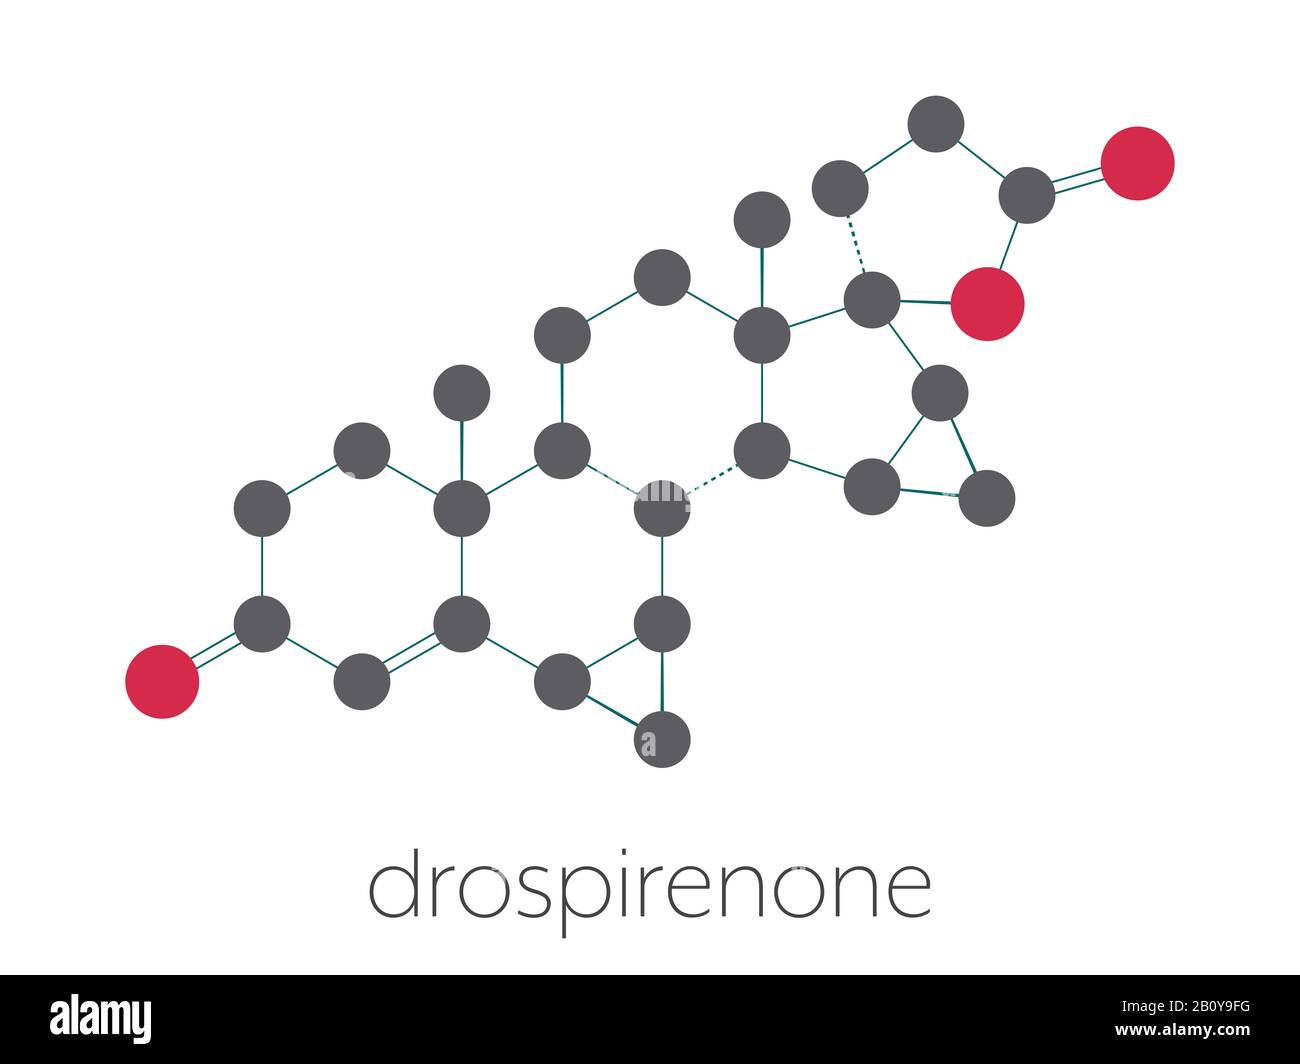 Drospirenone contraceptive drug molecule, illustration Stock Photo